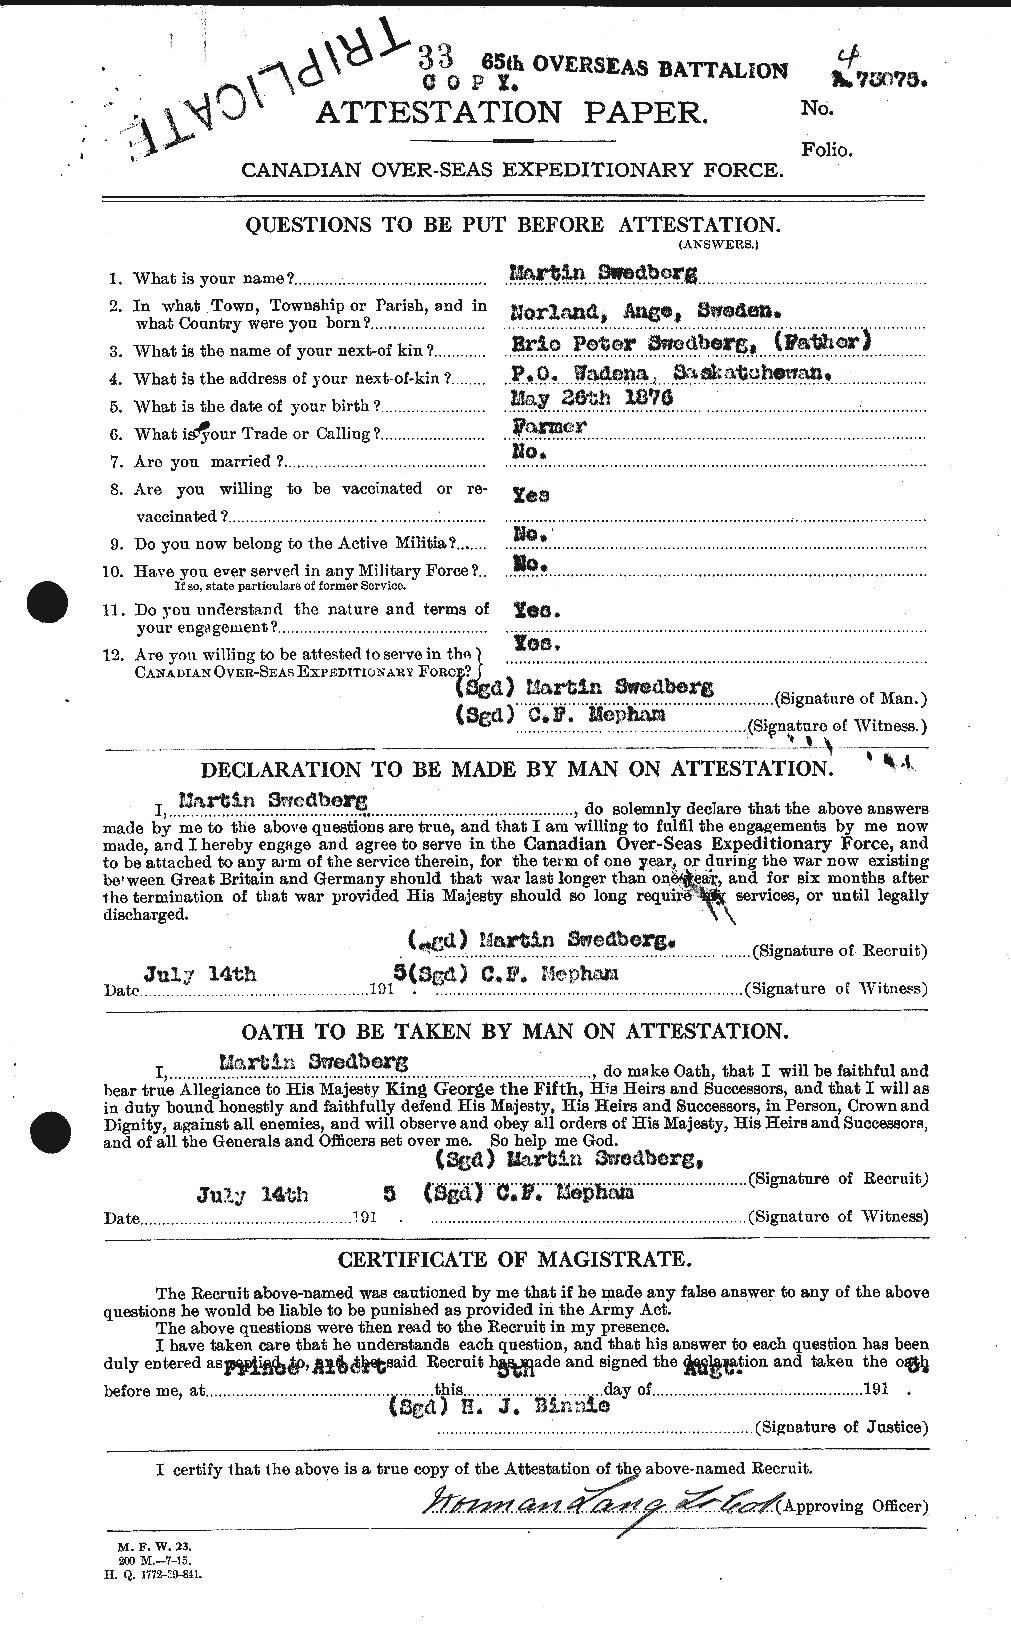 Dossiers du Personnel de la Première Guerre mondiale - CEC 126113a